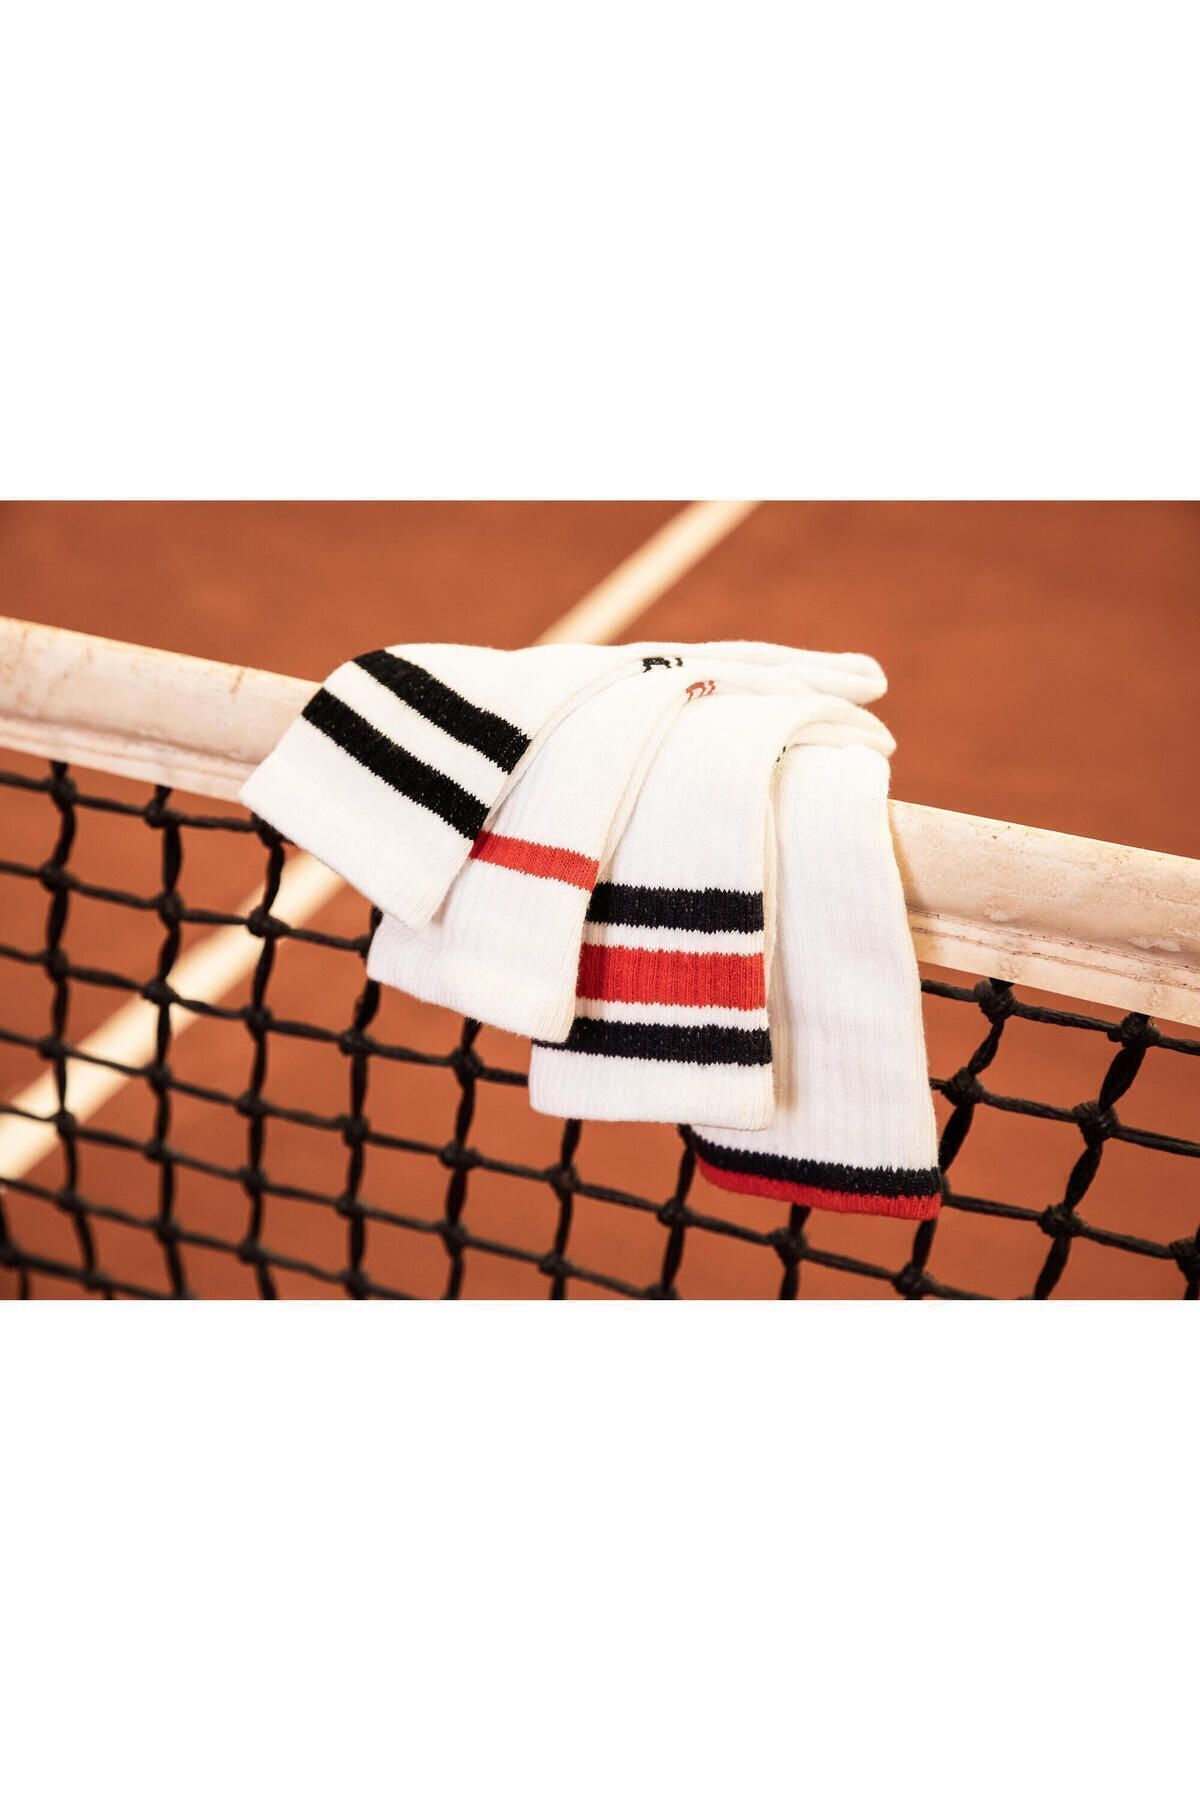 Decathlon Tenis Çorabı - Kısa Konçlu - 3 Çift - Beyaz - Rs 500